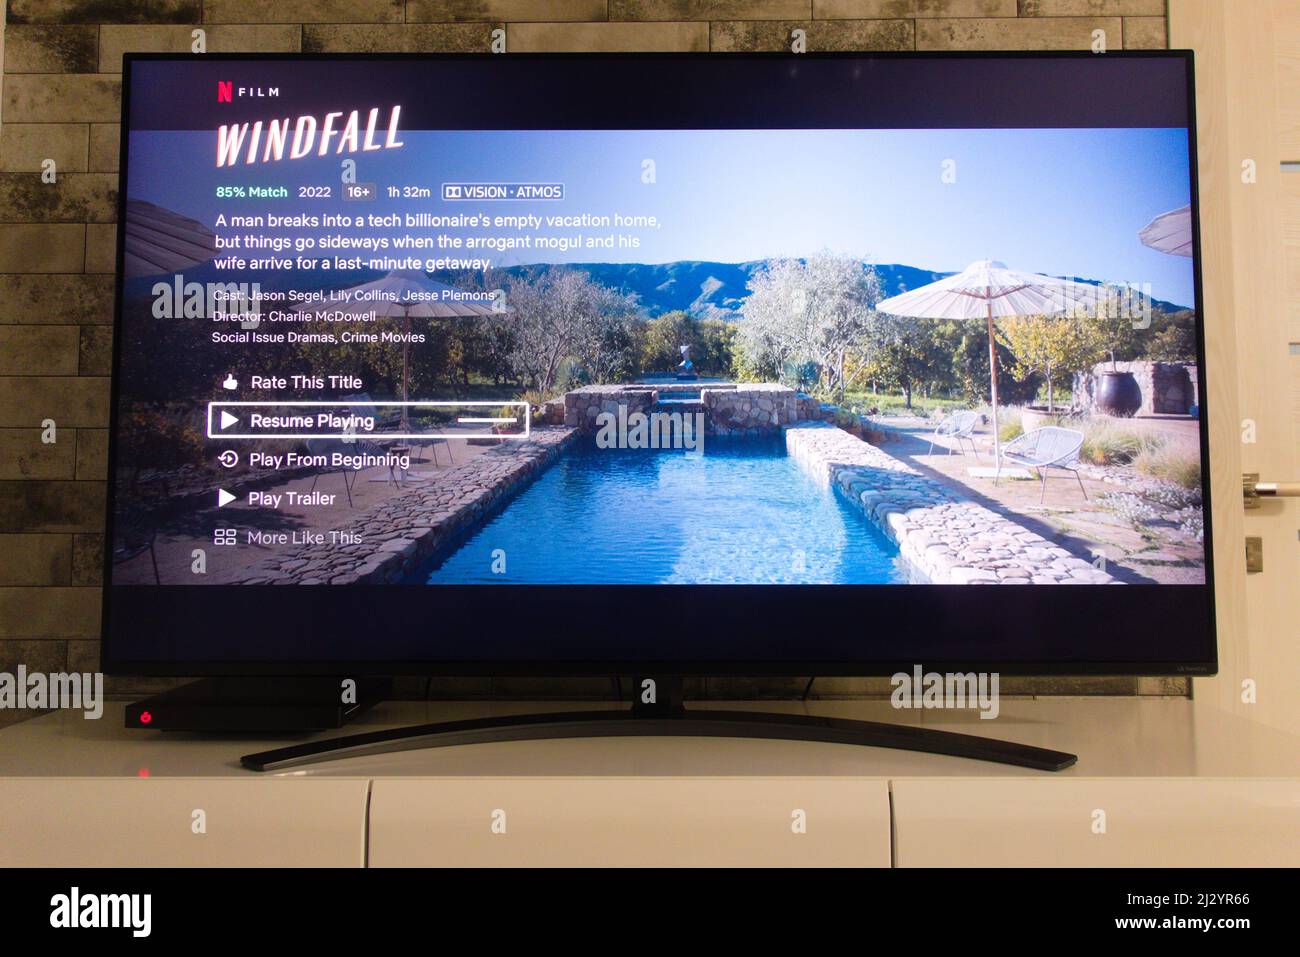 KONSKIE, POLEN - 02. April 2022: Netflix-Plattform auf tv-Bildschirm mit Windfall-Kriminaldrama-Film Stockfoto